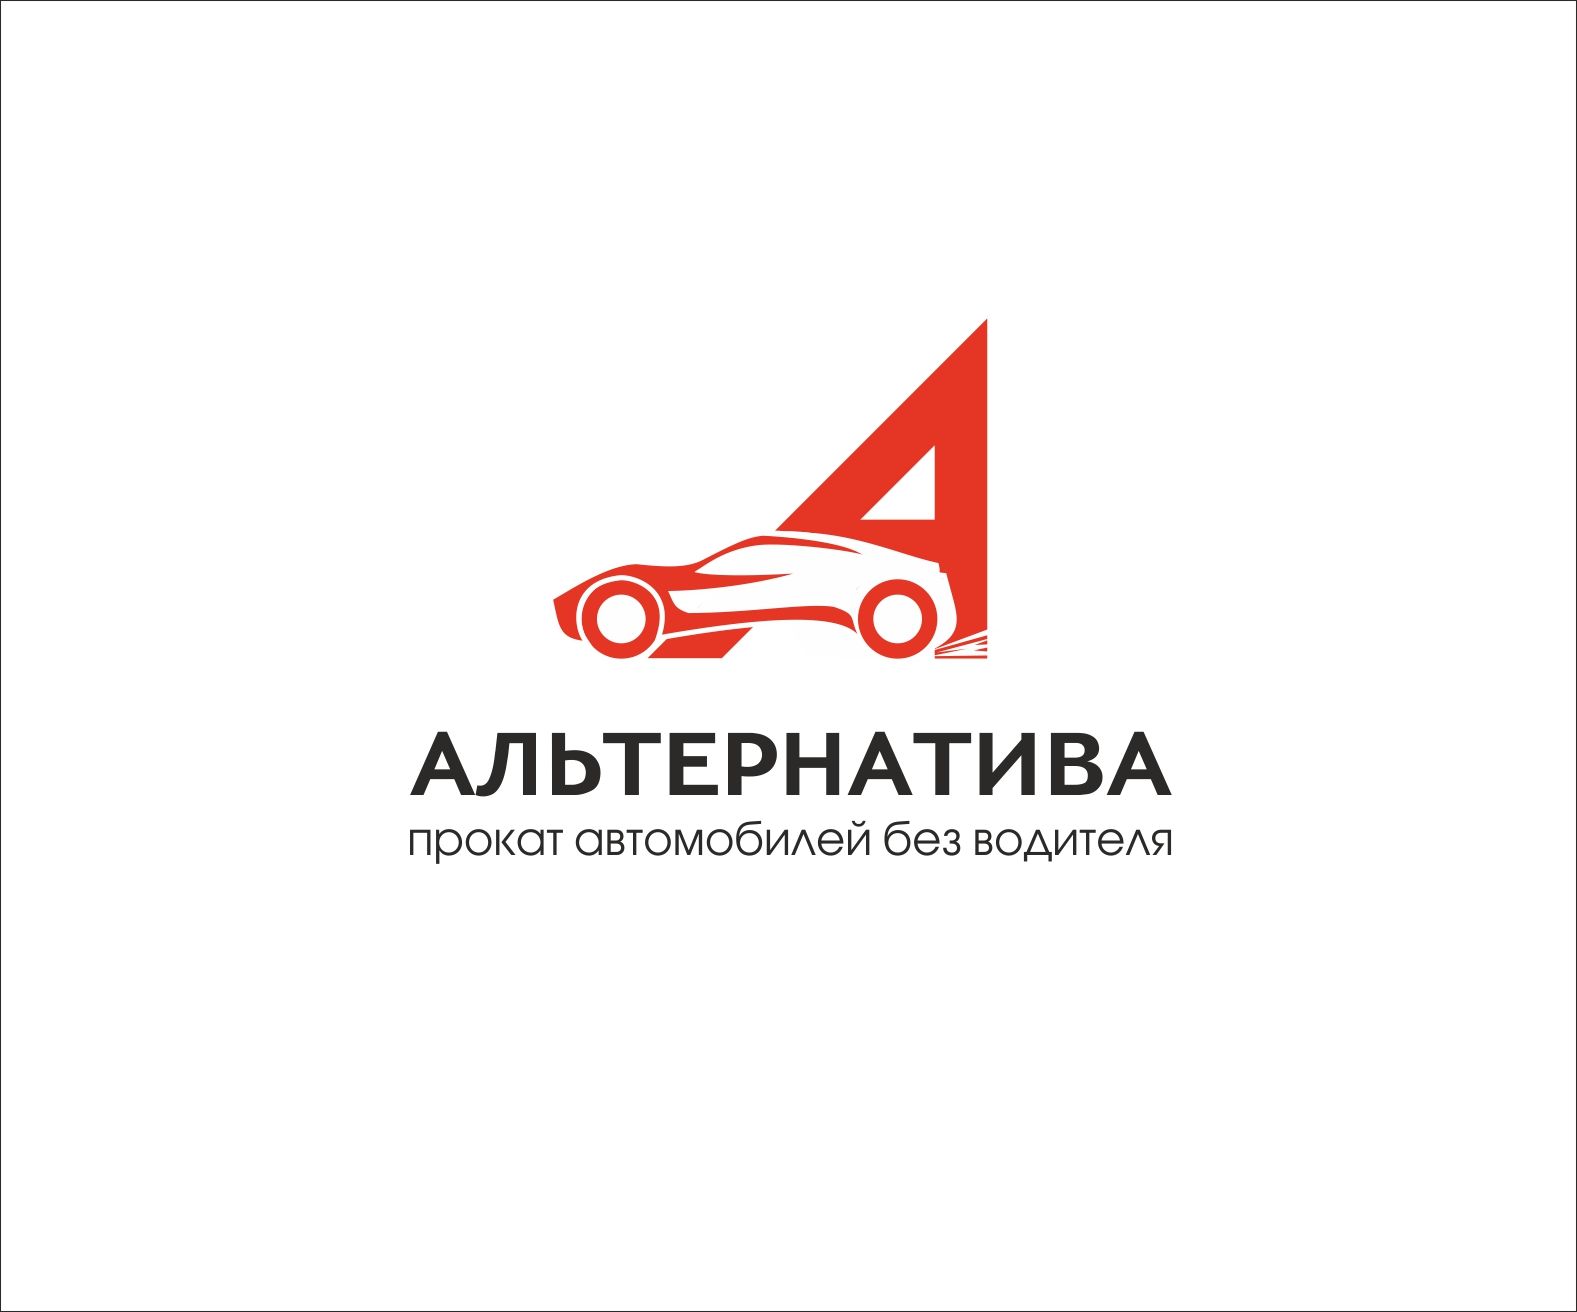 Логотип для проката автомобилей - дизайнер art-valeri